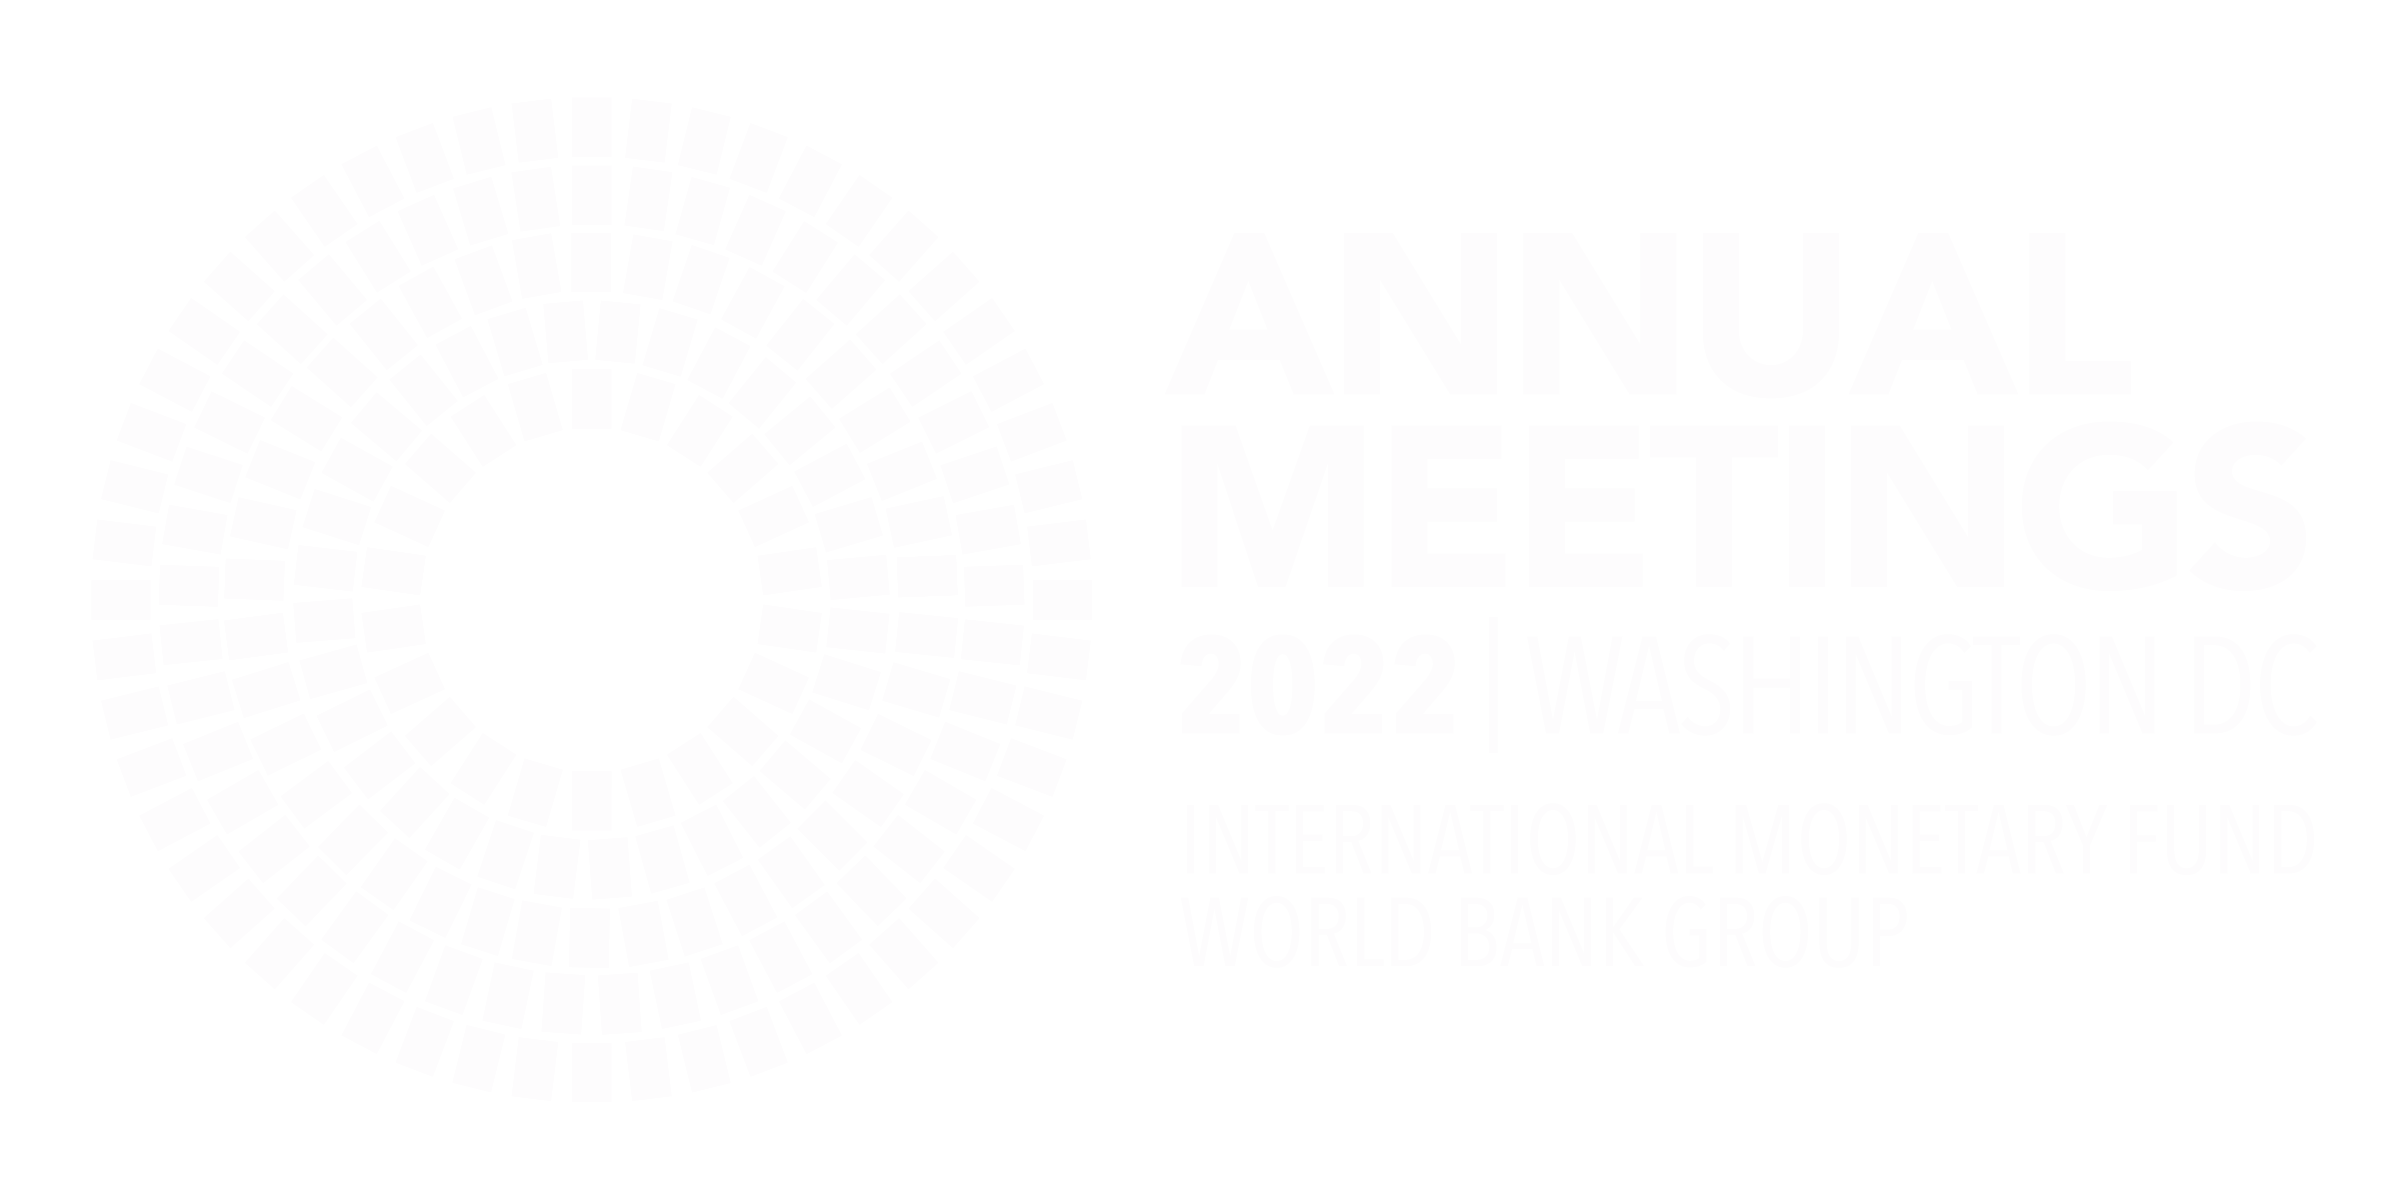 2022 Annual Meetings